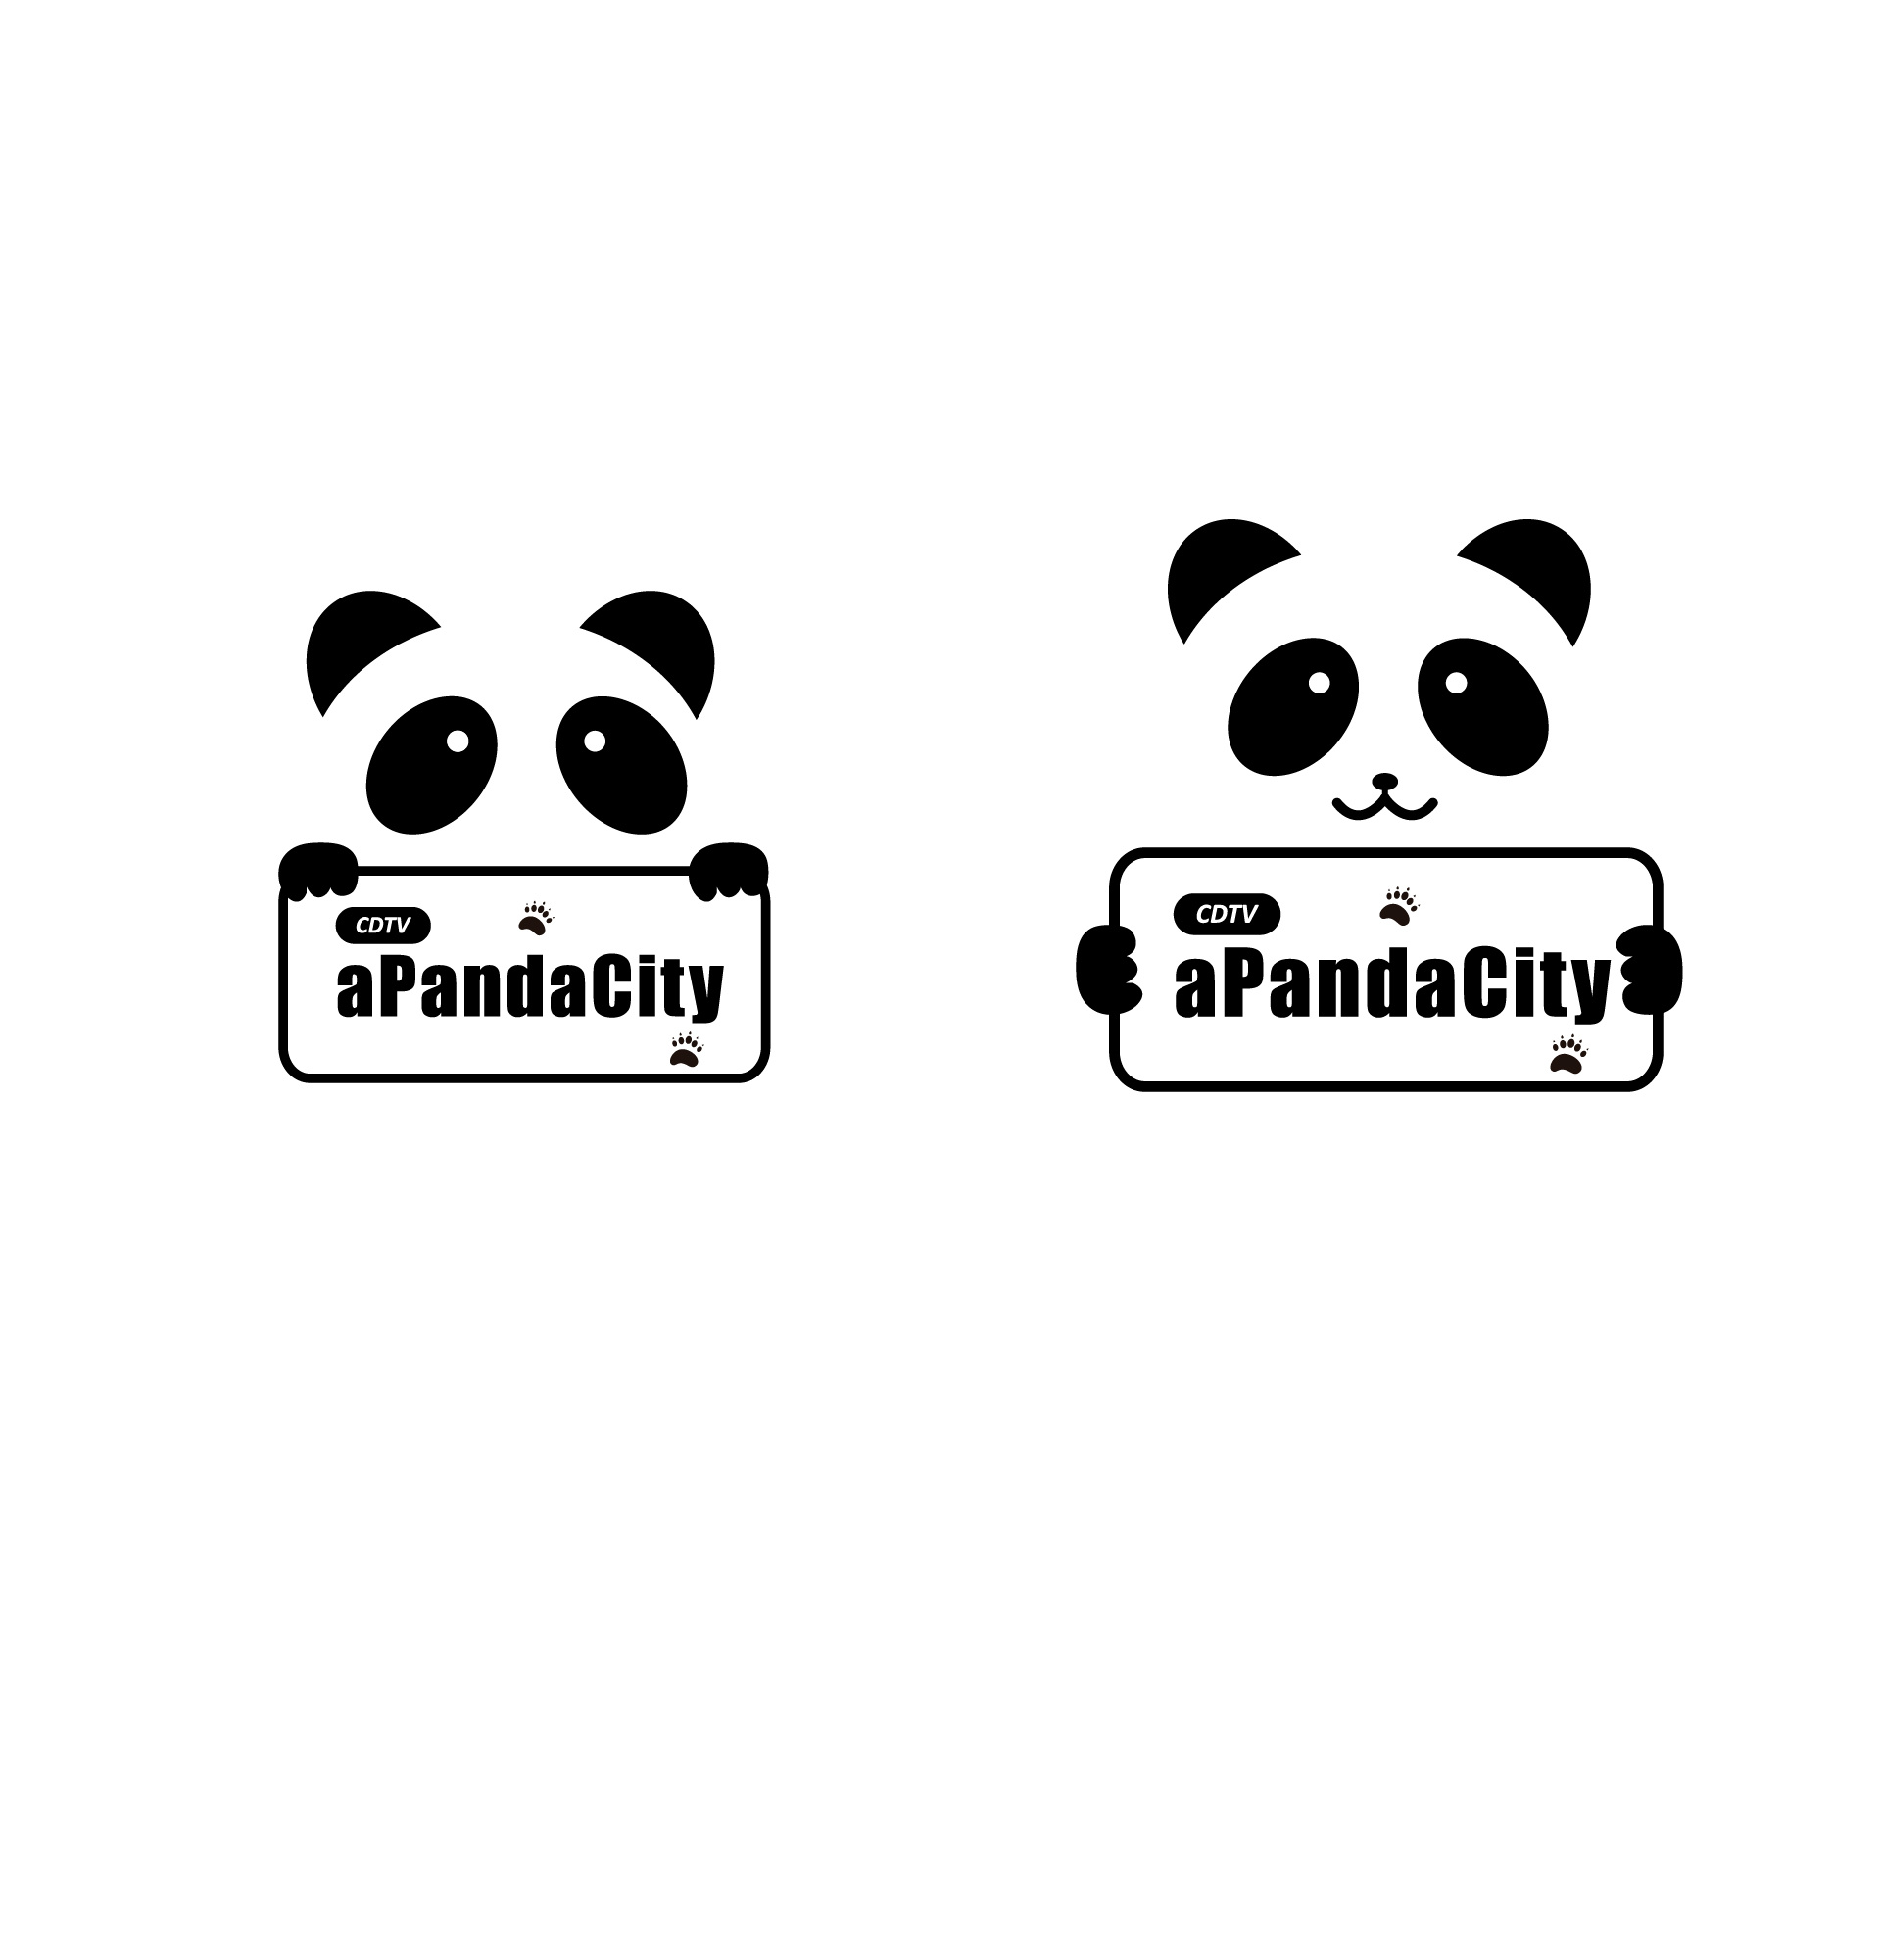 logo图片大全卡通熊猫图片